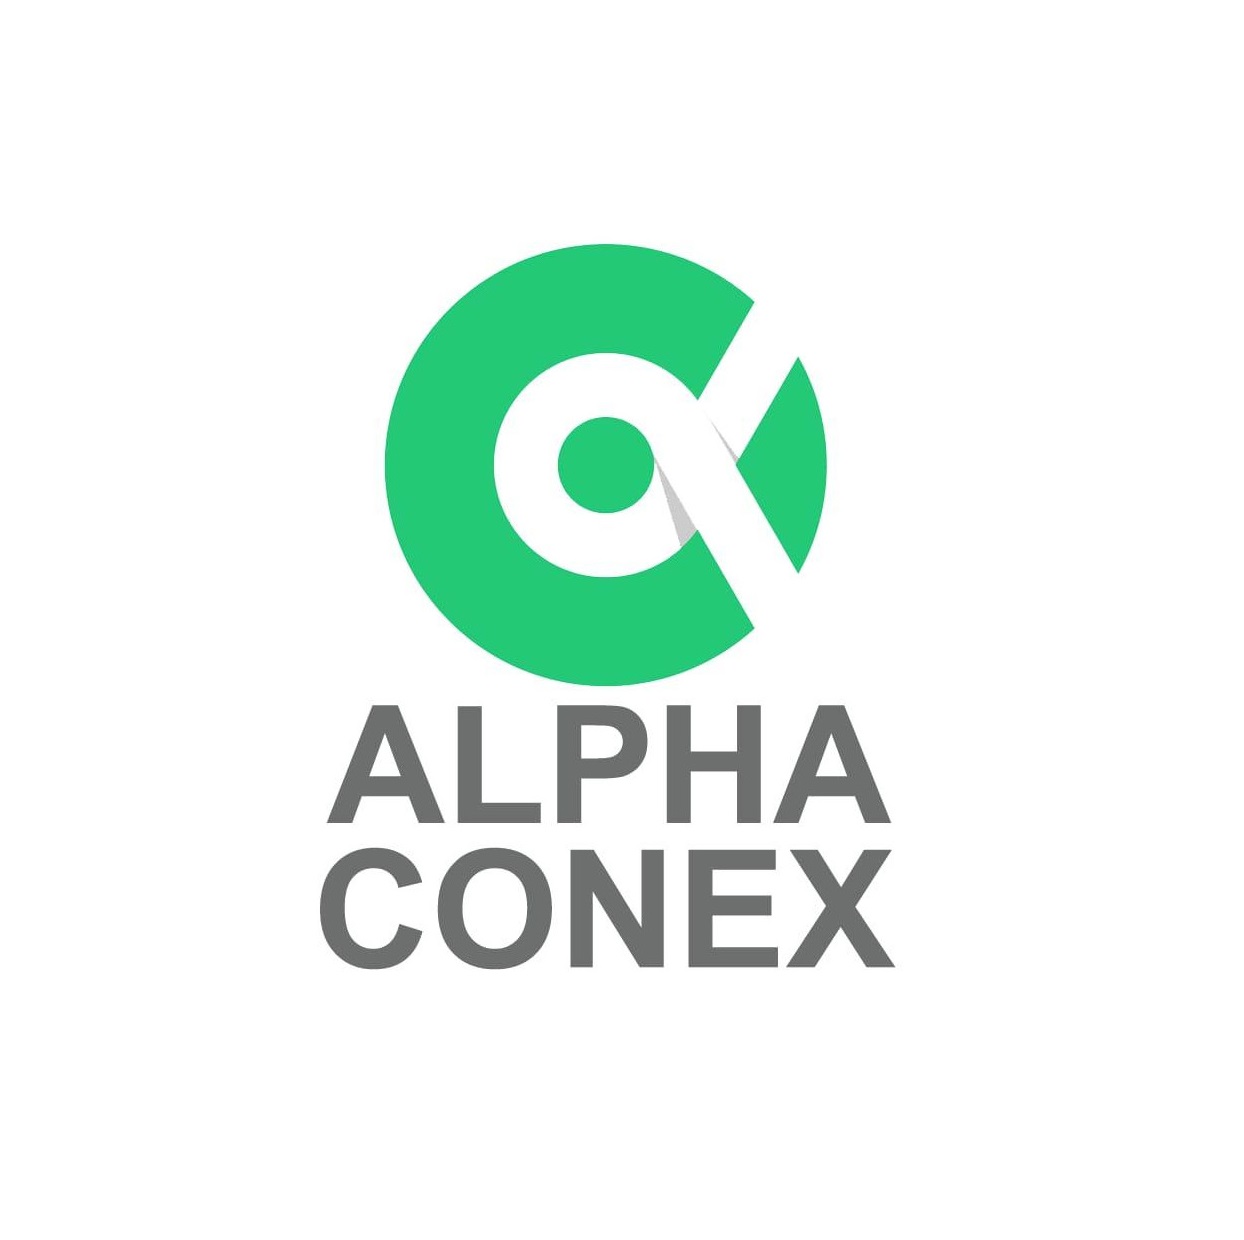 Alphaconex